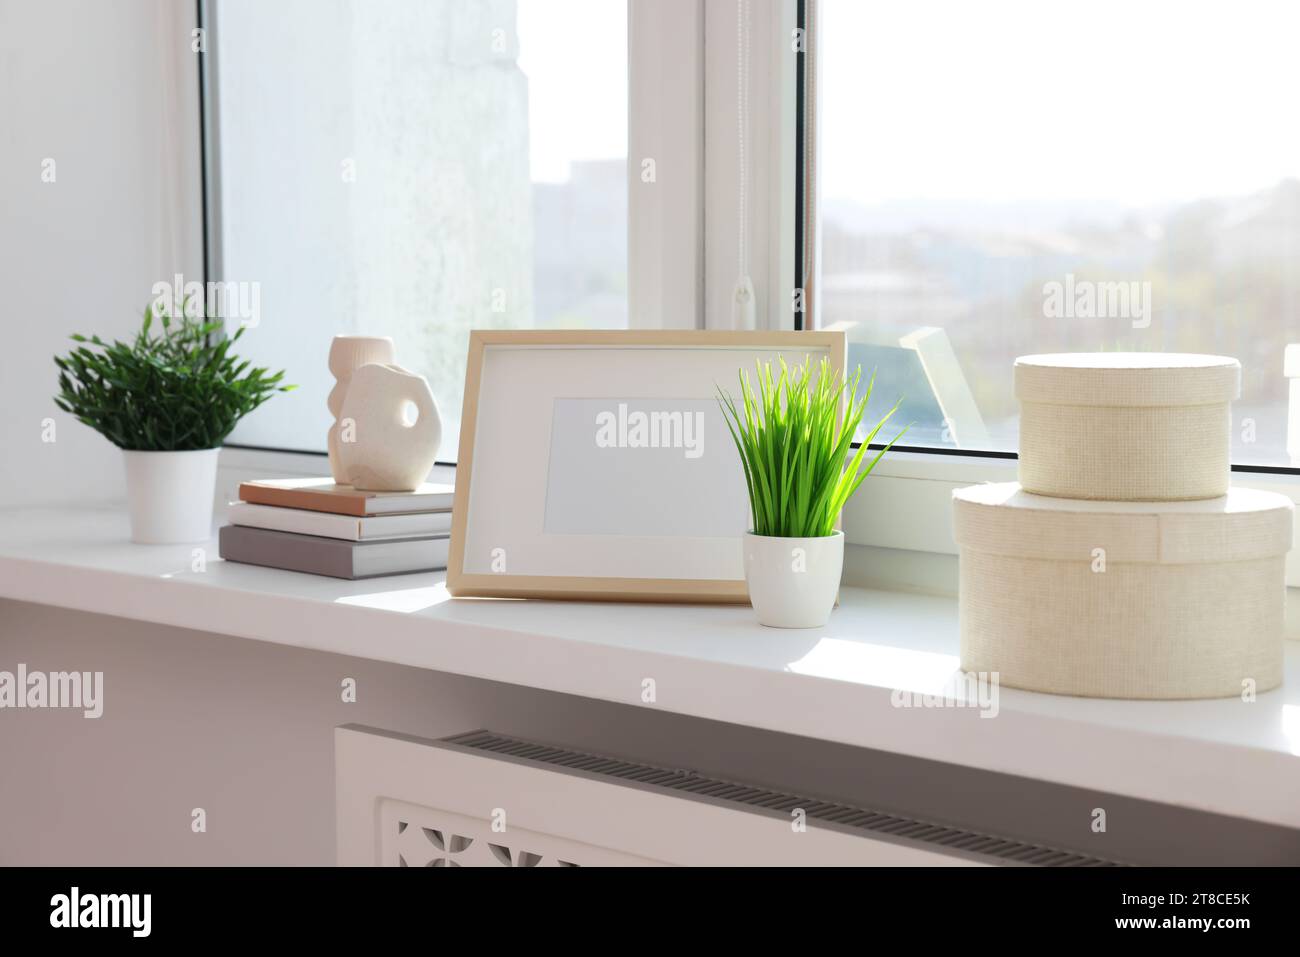 Plantes artificielles en pot, livres et décor sur le rebord de la fenêtre à l'intérieur Banque D'Images